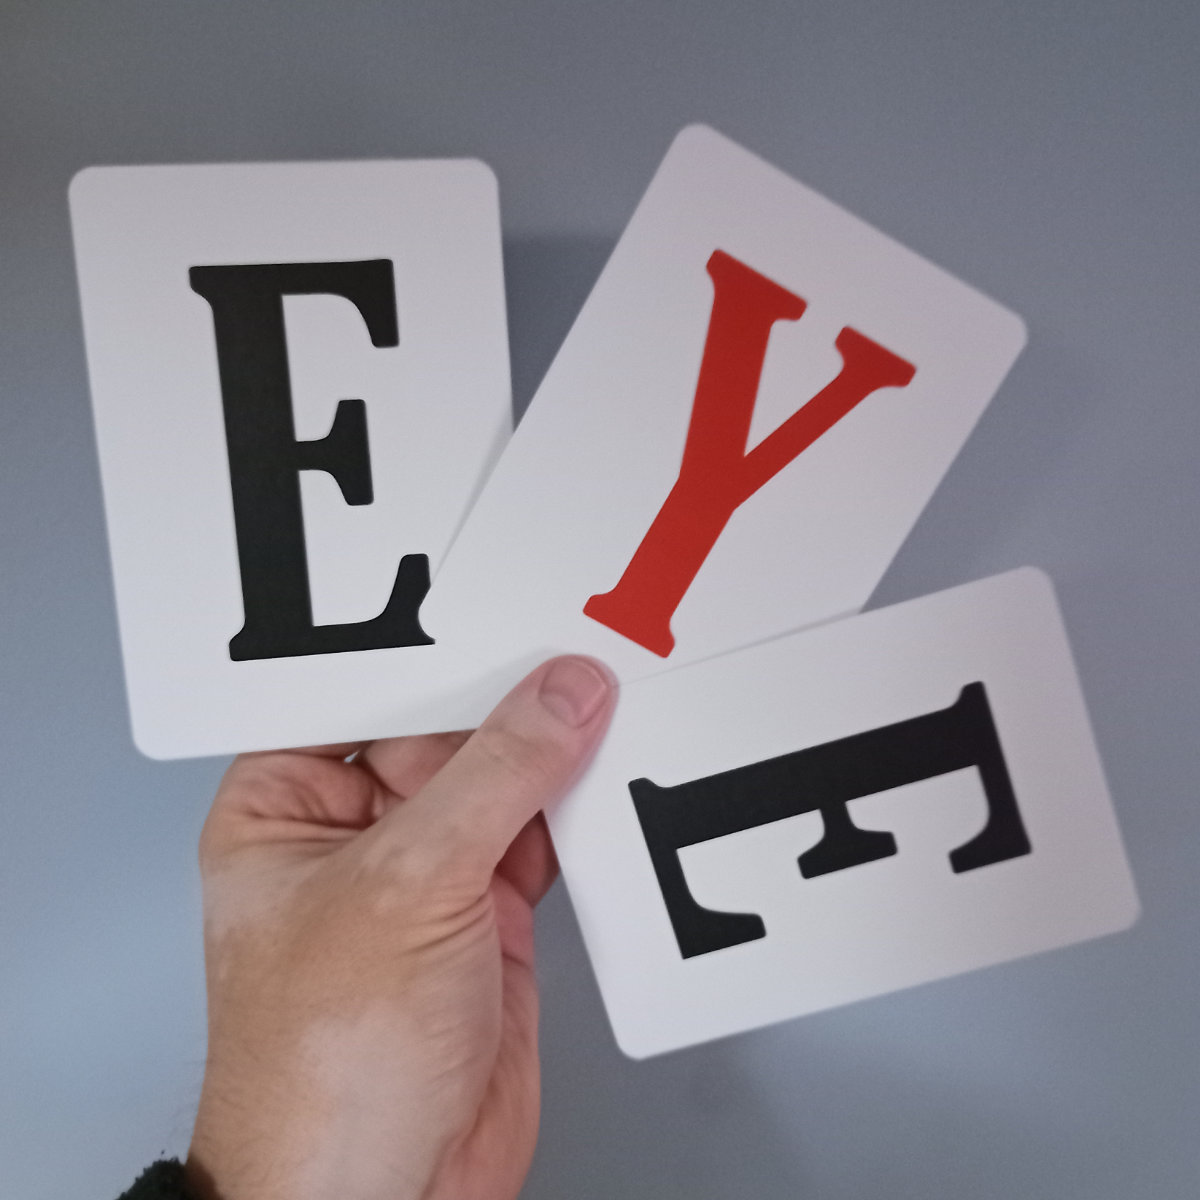 The E-Y-E Trick Image